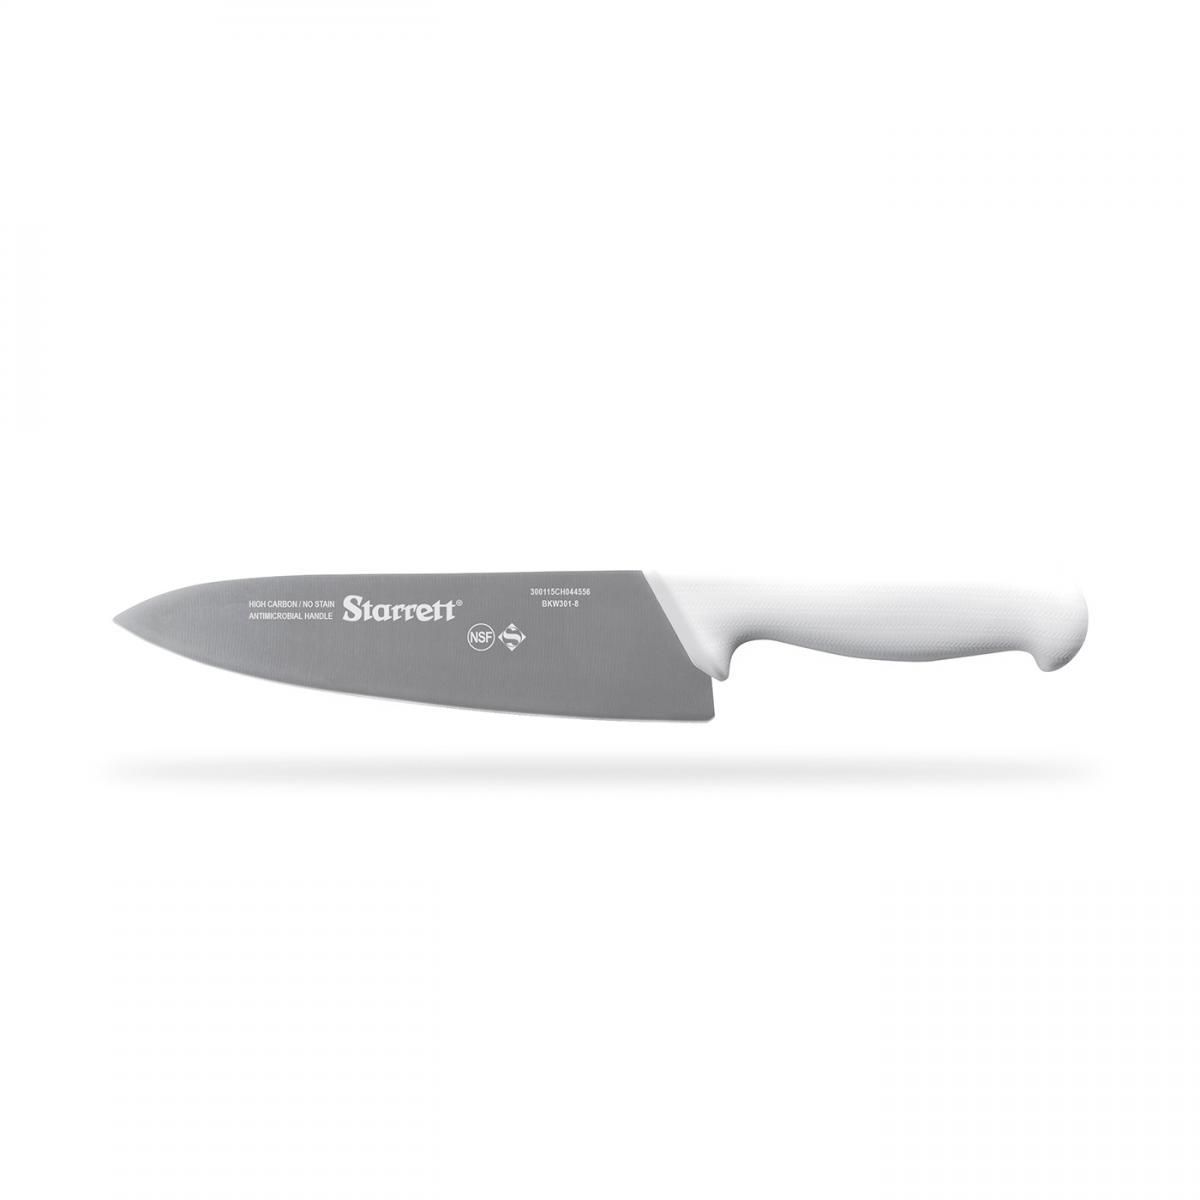 Kit Cheff Starrett Cutelo + 2 facas + Pedra de afiar + Chaira